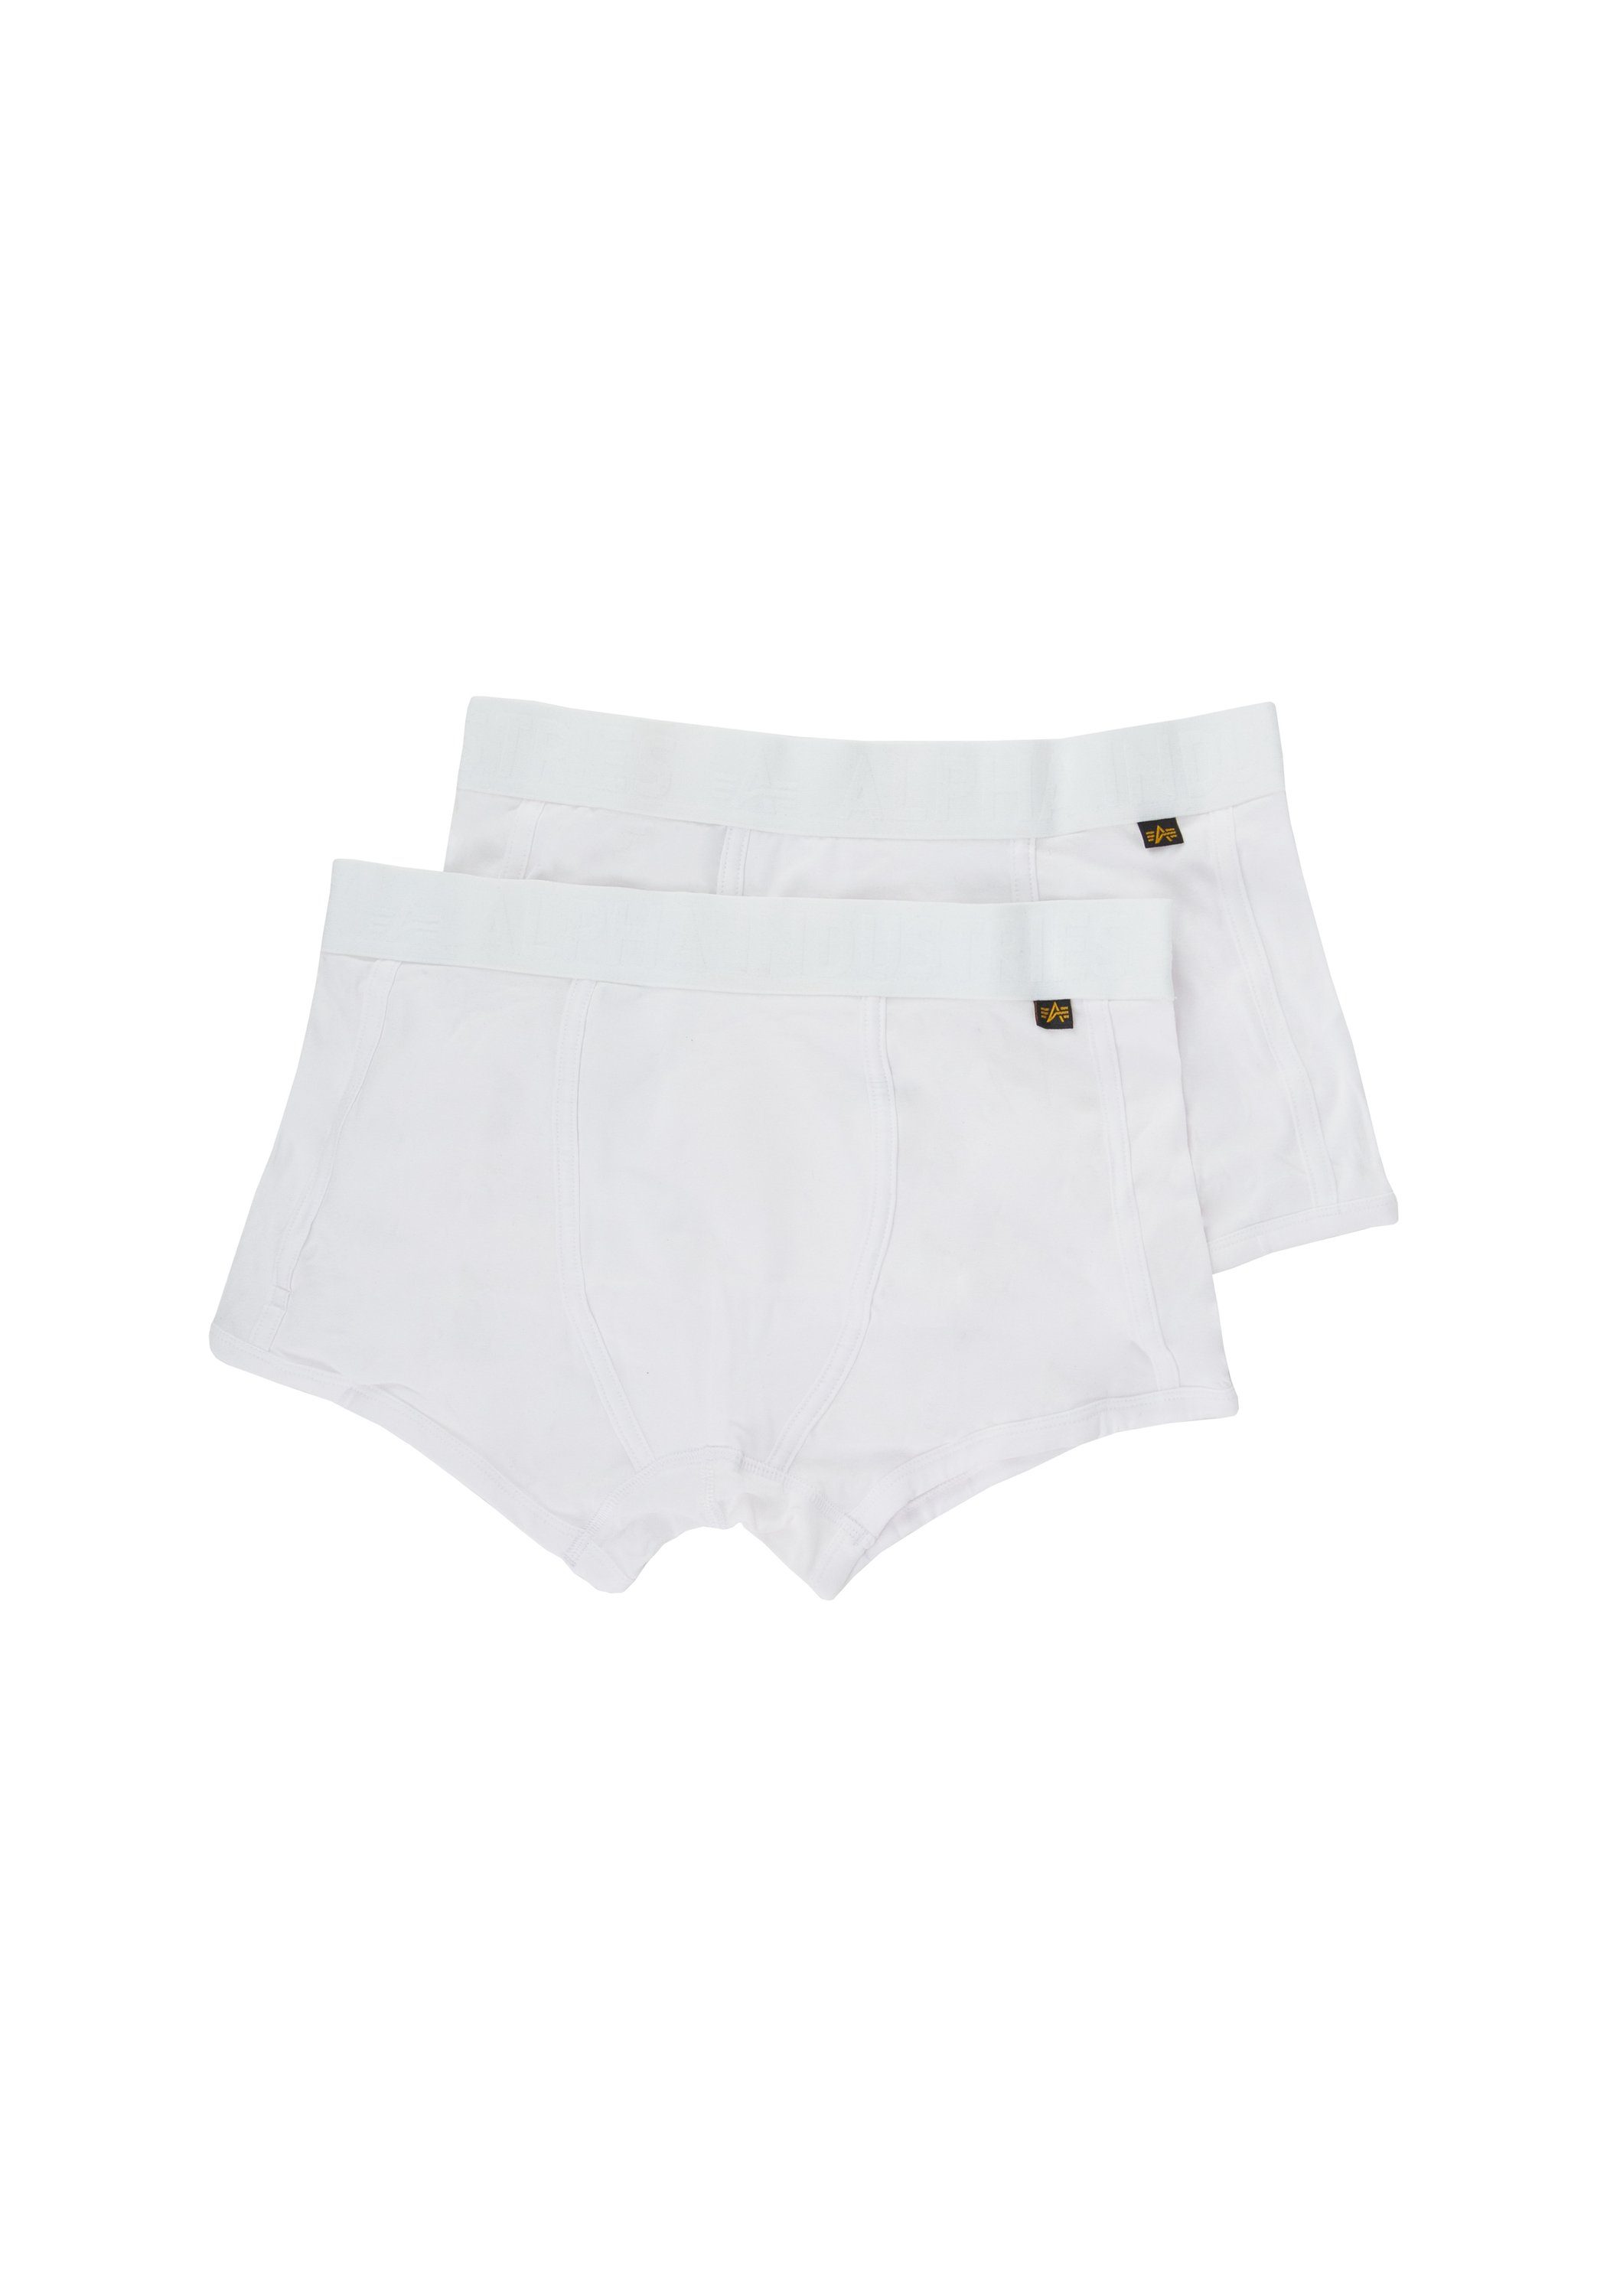 Underwear Industries Alpha AI Tape - all Alpha Men Industries Pack Boxer Underwear 2 white